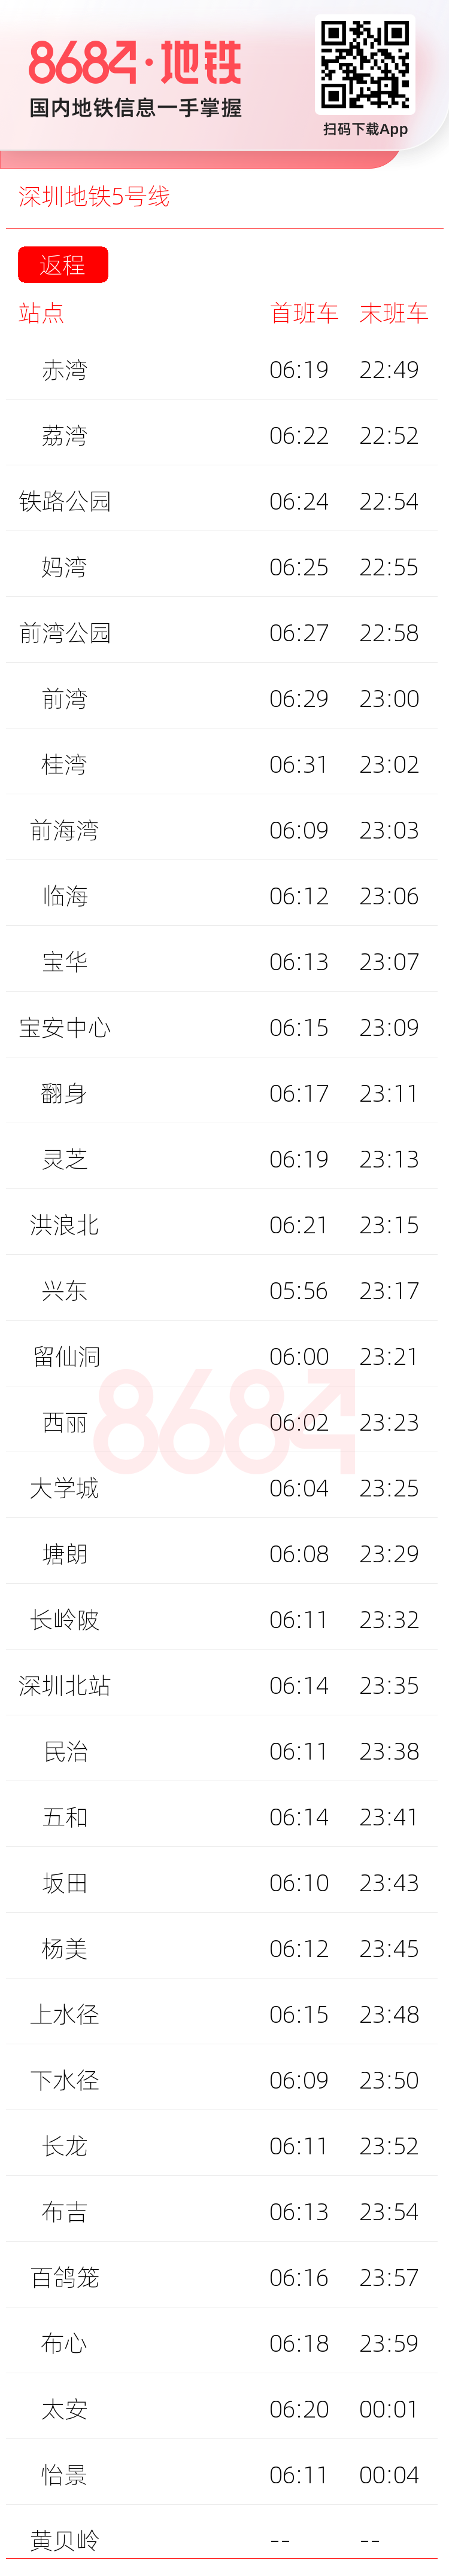 深圳地铁5号线运营时间表